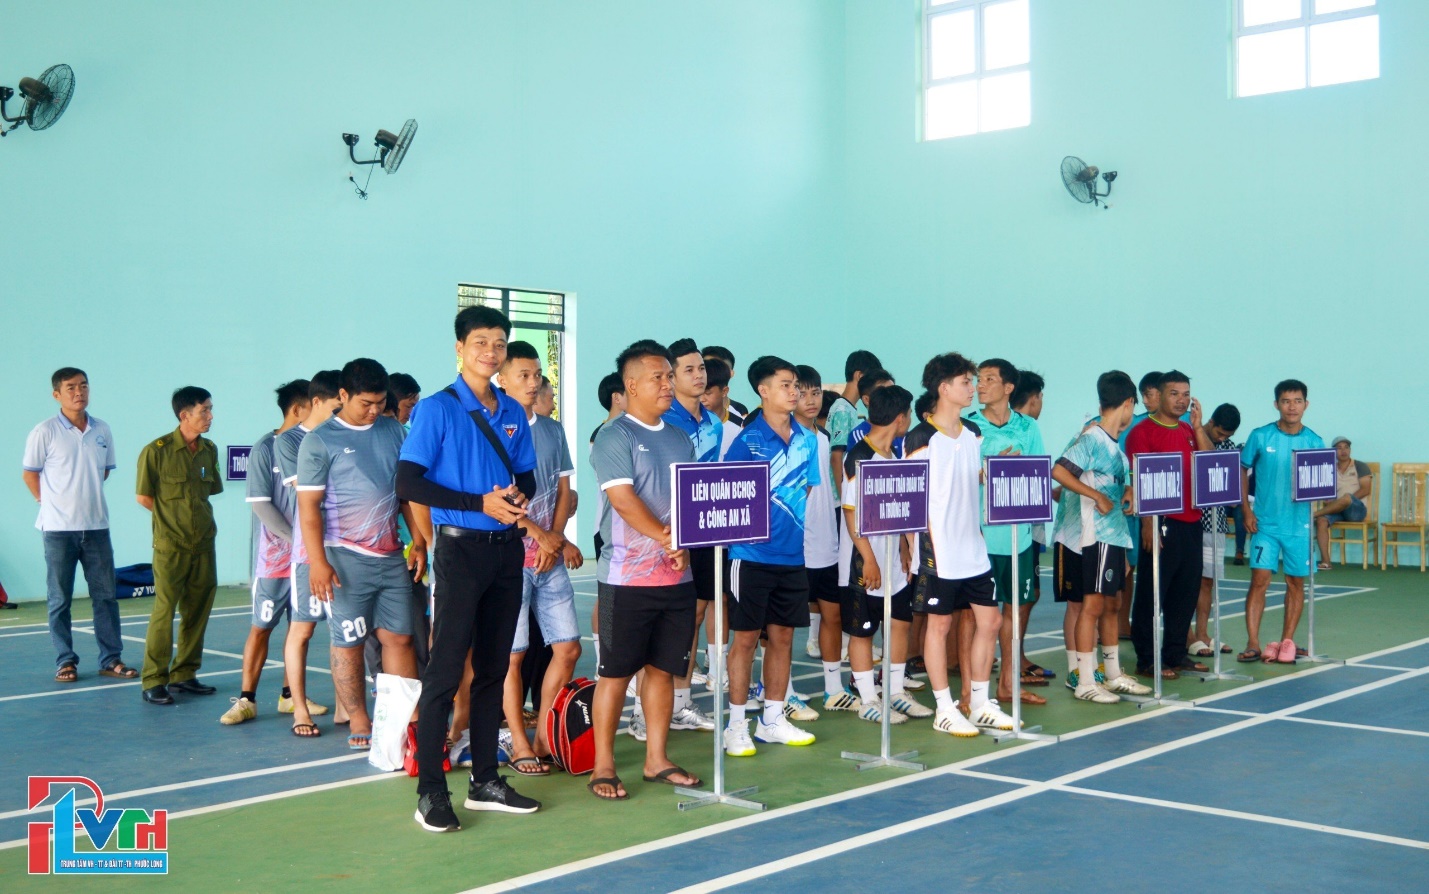 Xã Long Giang tổ chức giải cầu lông, bóng đá chào mừng Kỷ niệm 78 năm Ngày CMT8 và Quốc khánh nước CHXHCN Việt Nam (2/9/1945-2/9/2023)